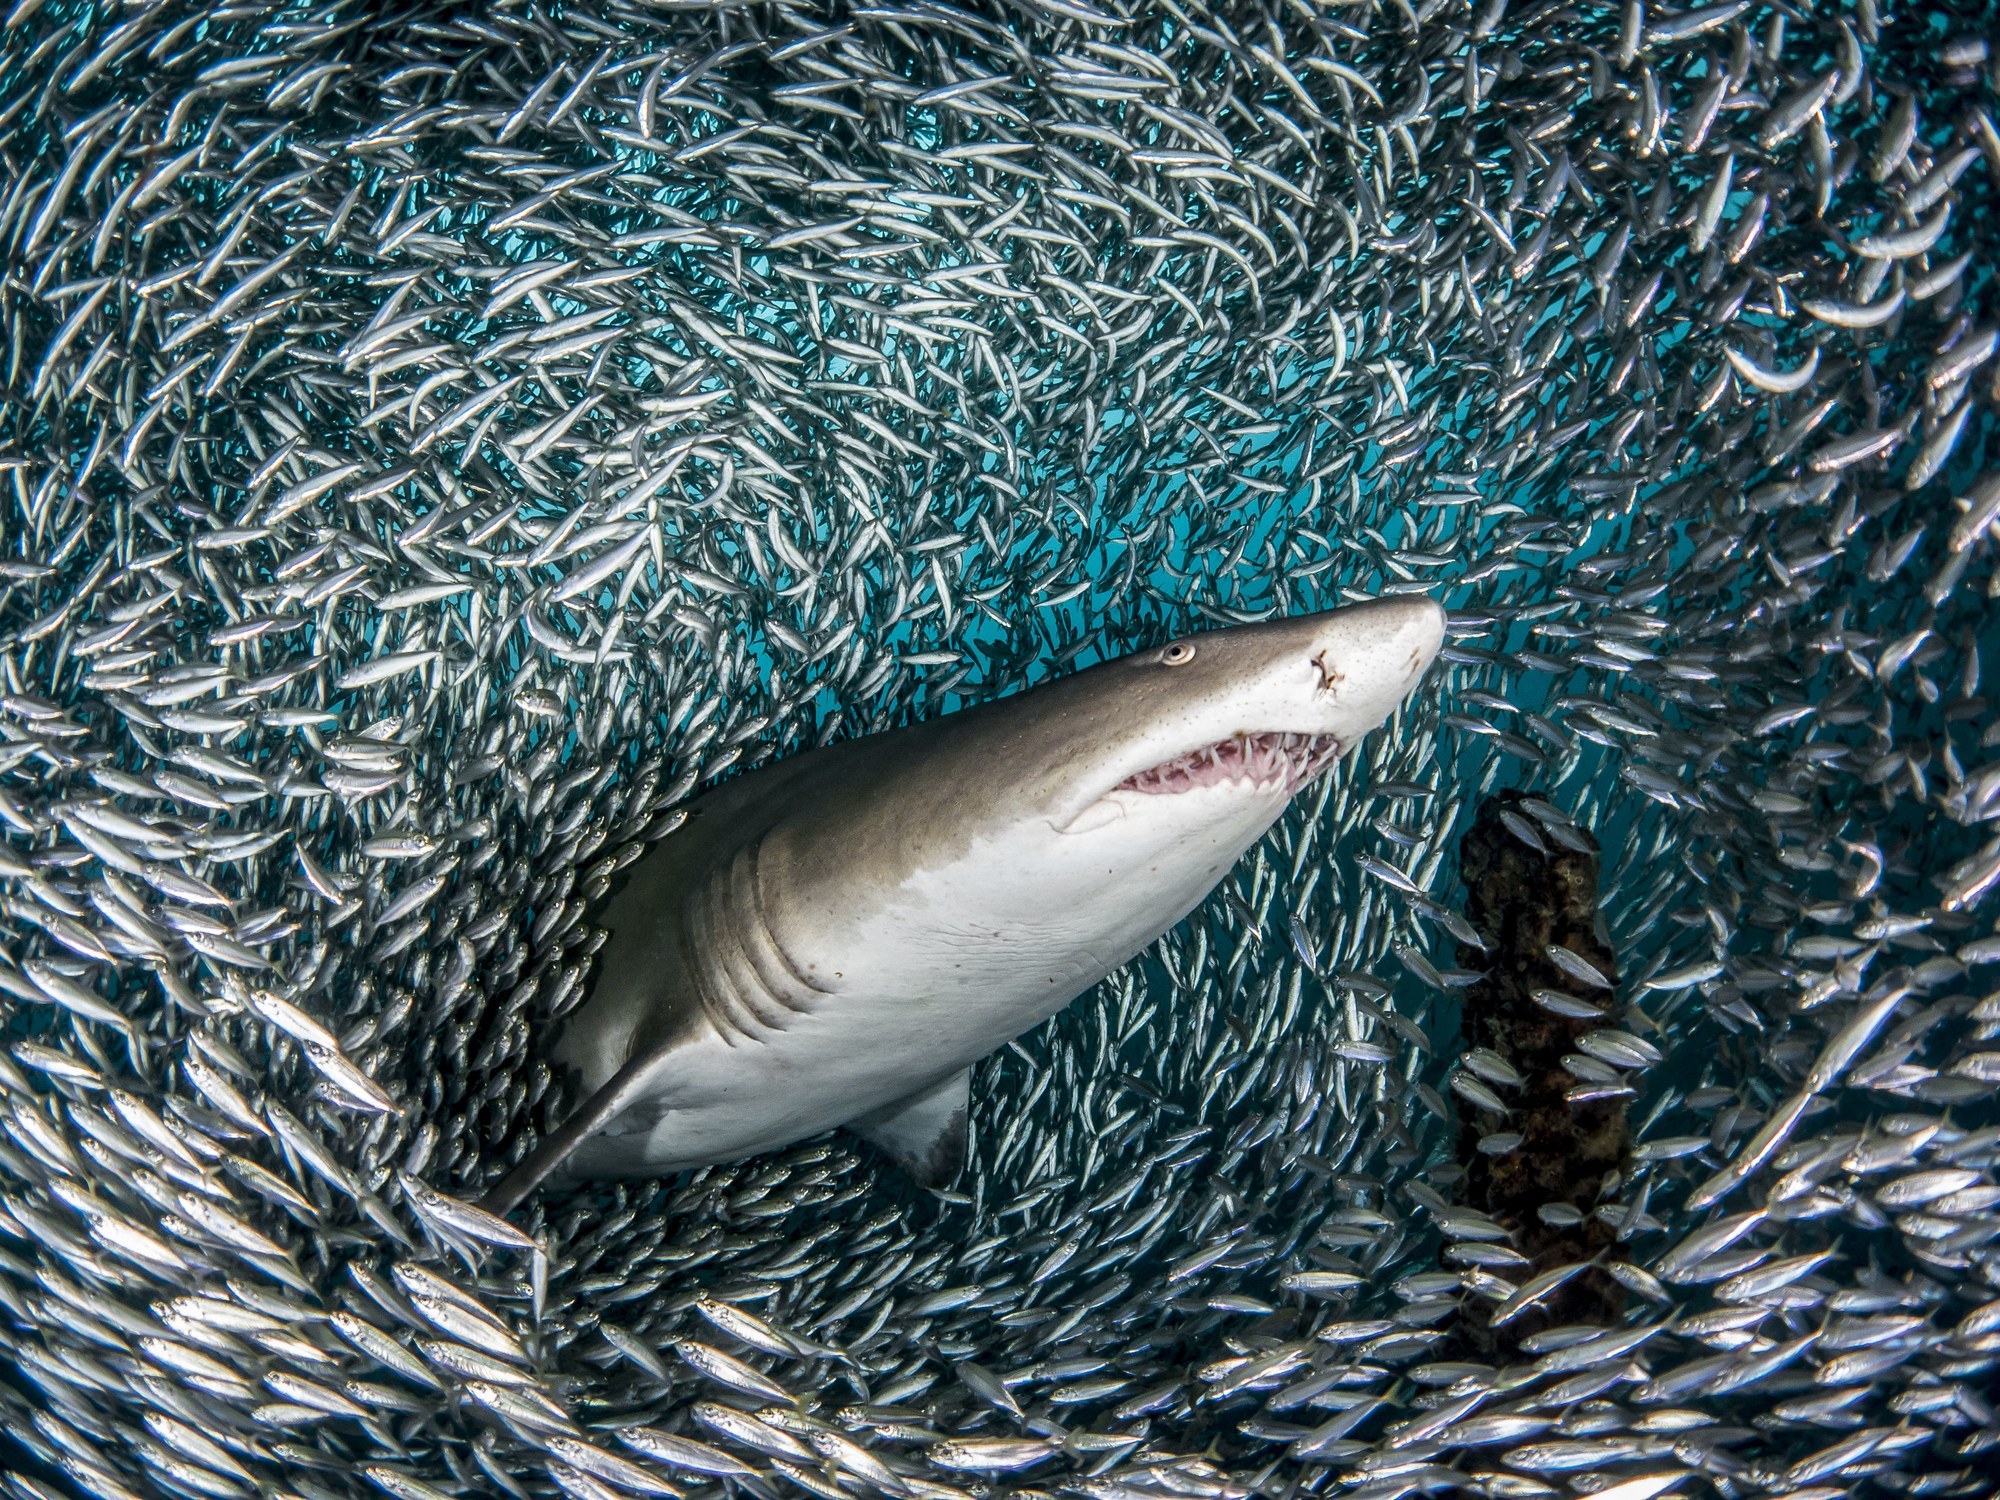 鲨鱼凶狠小动物图片